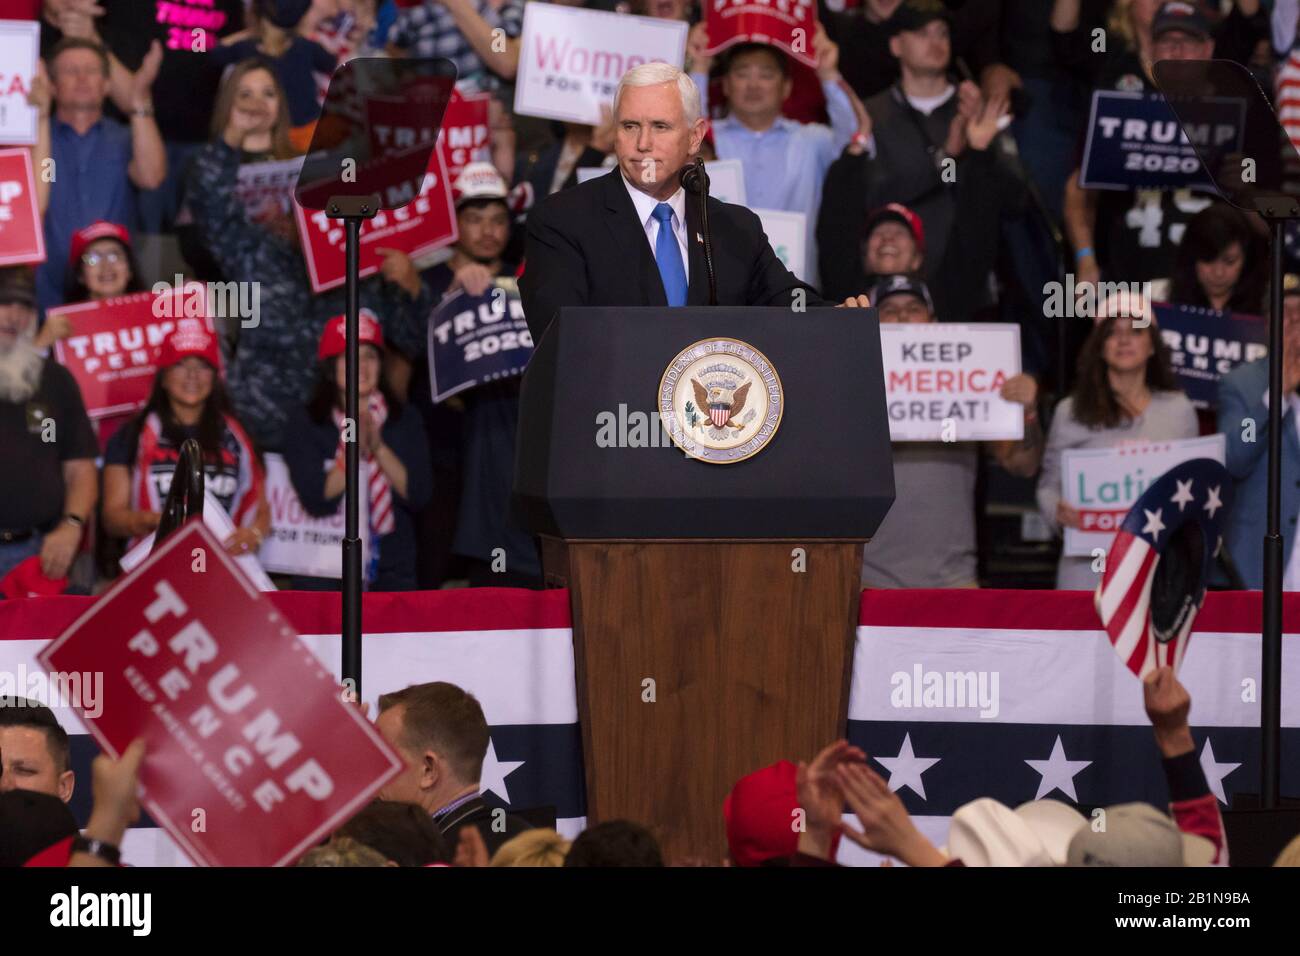 21 de febrero de 2020, LAS VEGAS CONVENTION CENTER, LAS VEGAS, NEVADA EE.UU. - el vicepresidente Mike Pence habla en el mitin presidencial Trump Re-election - KEEP AMERICA GREAT Foto de stock